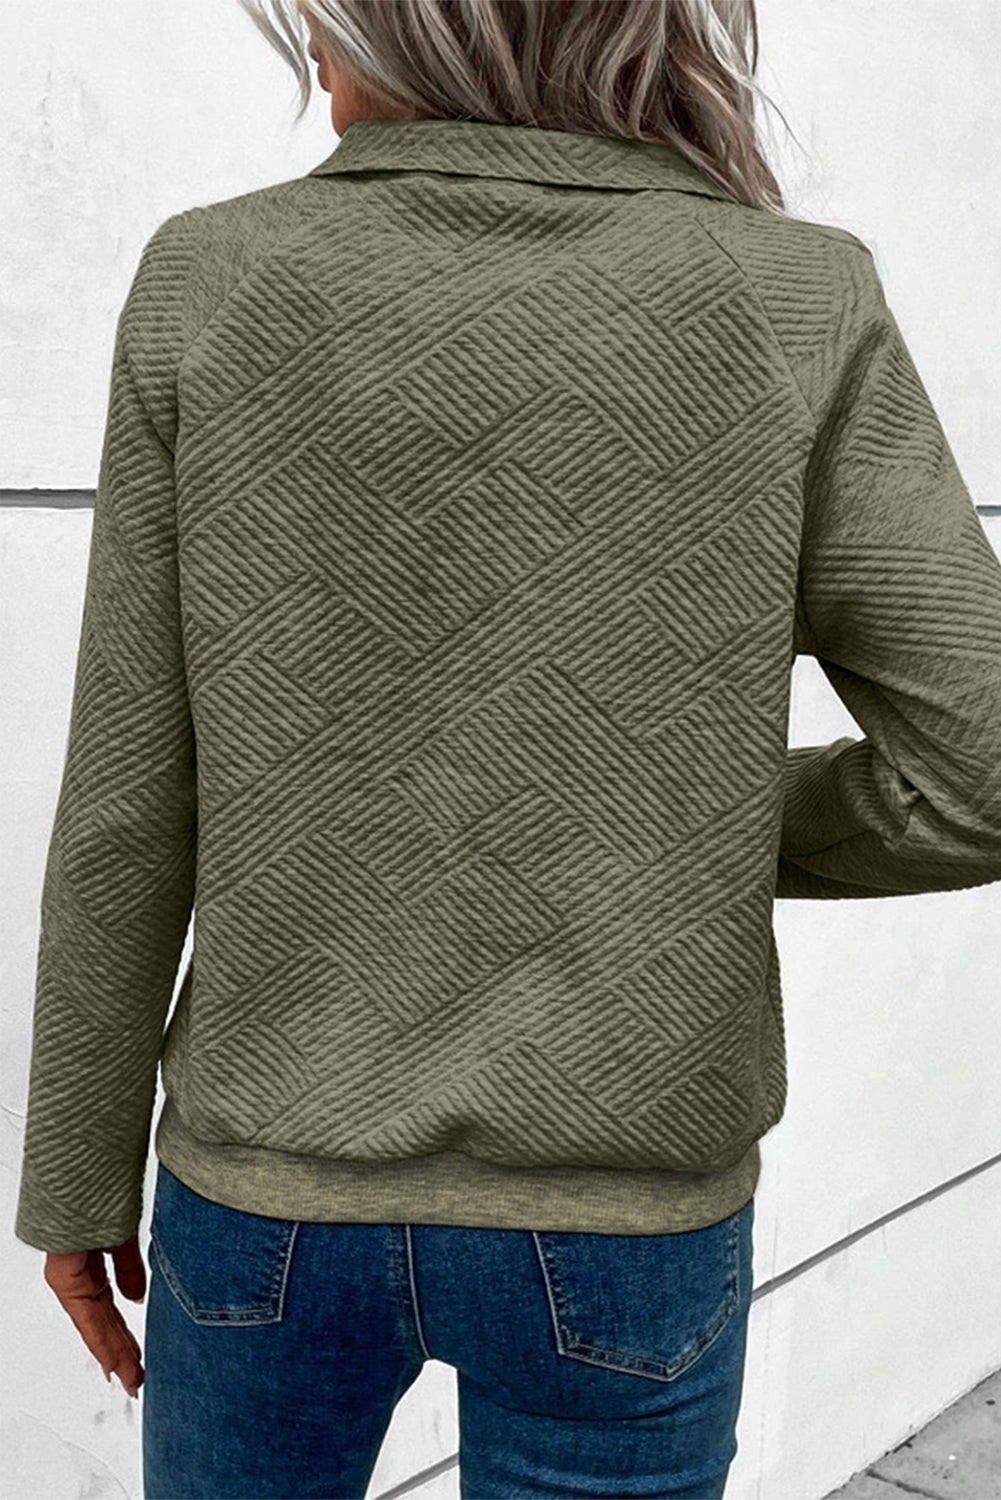 Hellkhakifarbenes, strukturiertes Strick-Sweatshirt mit Kängurutasche und Knöpfen